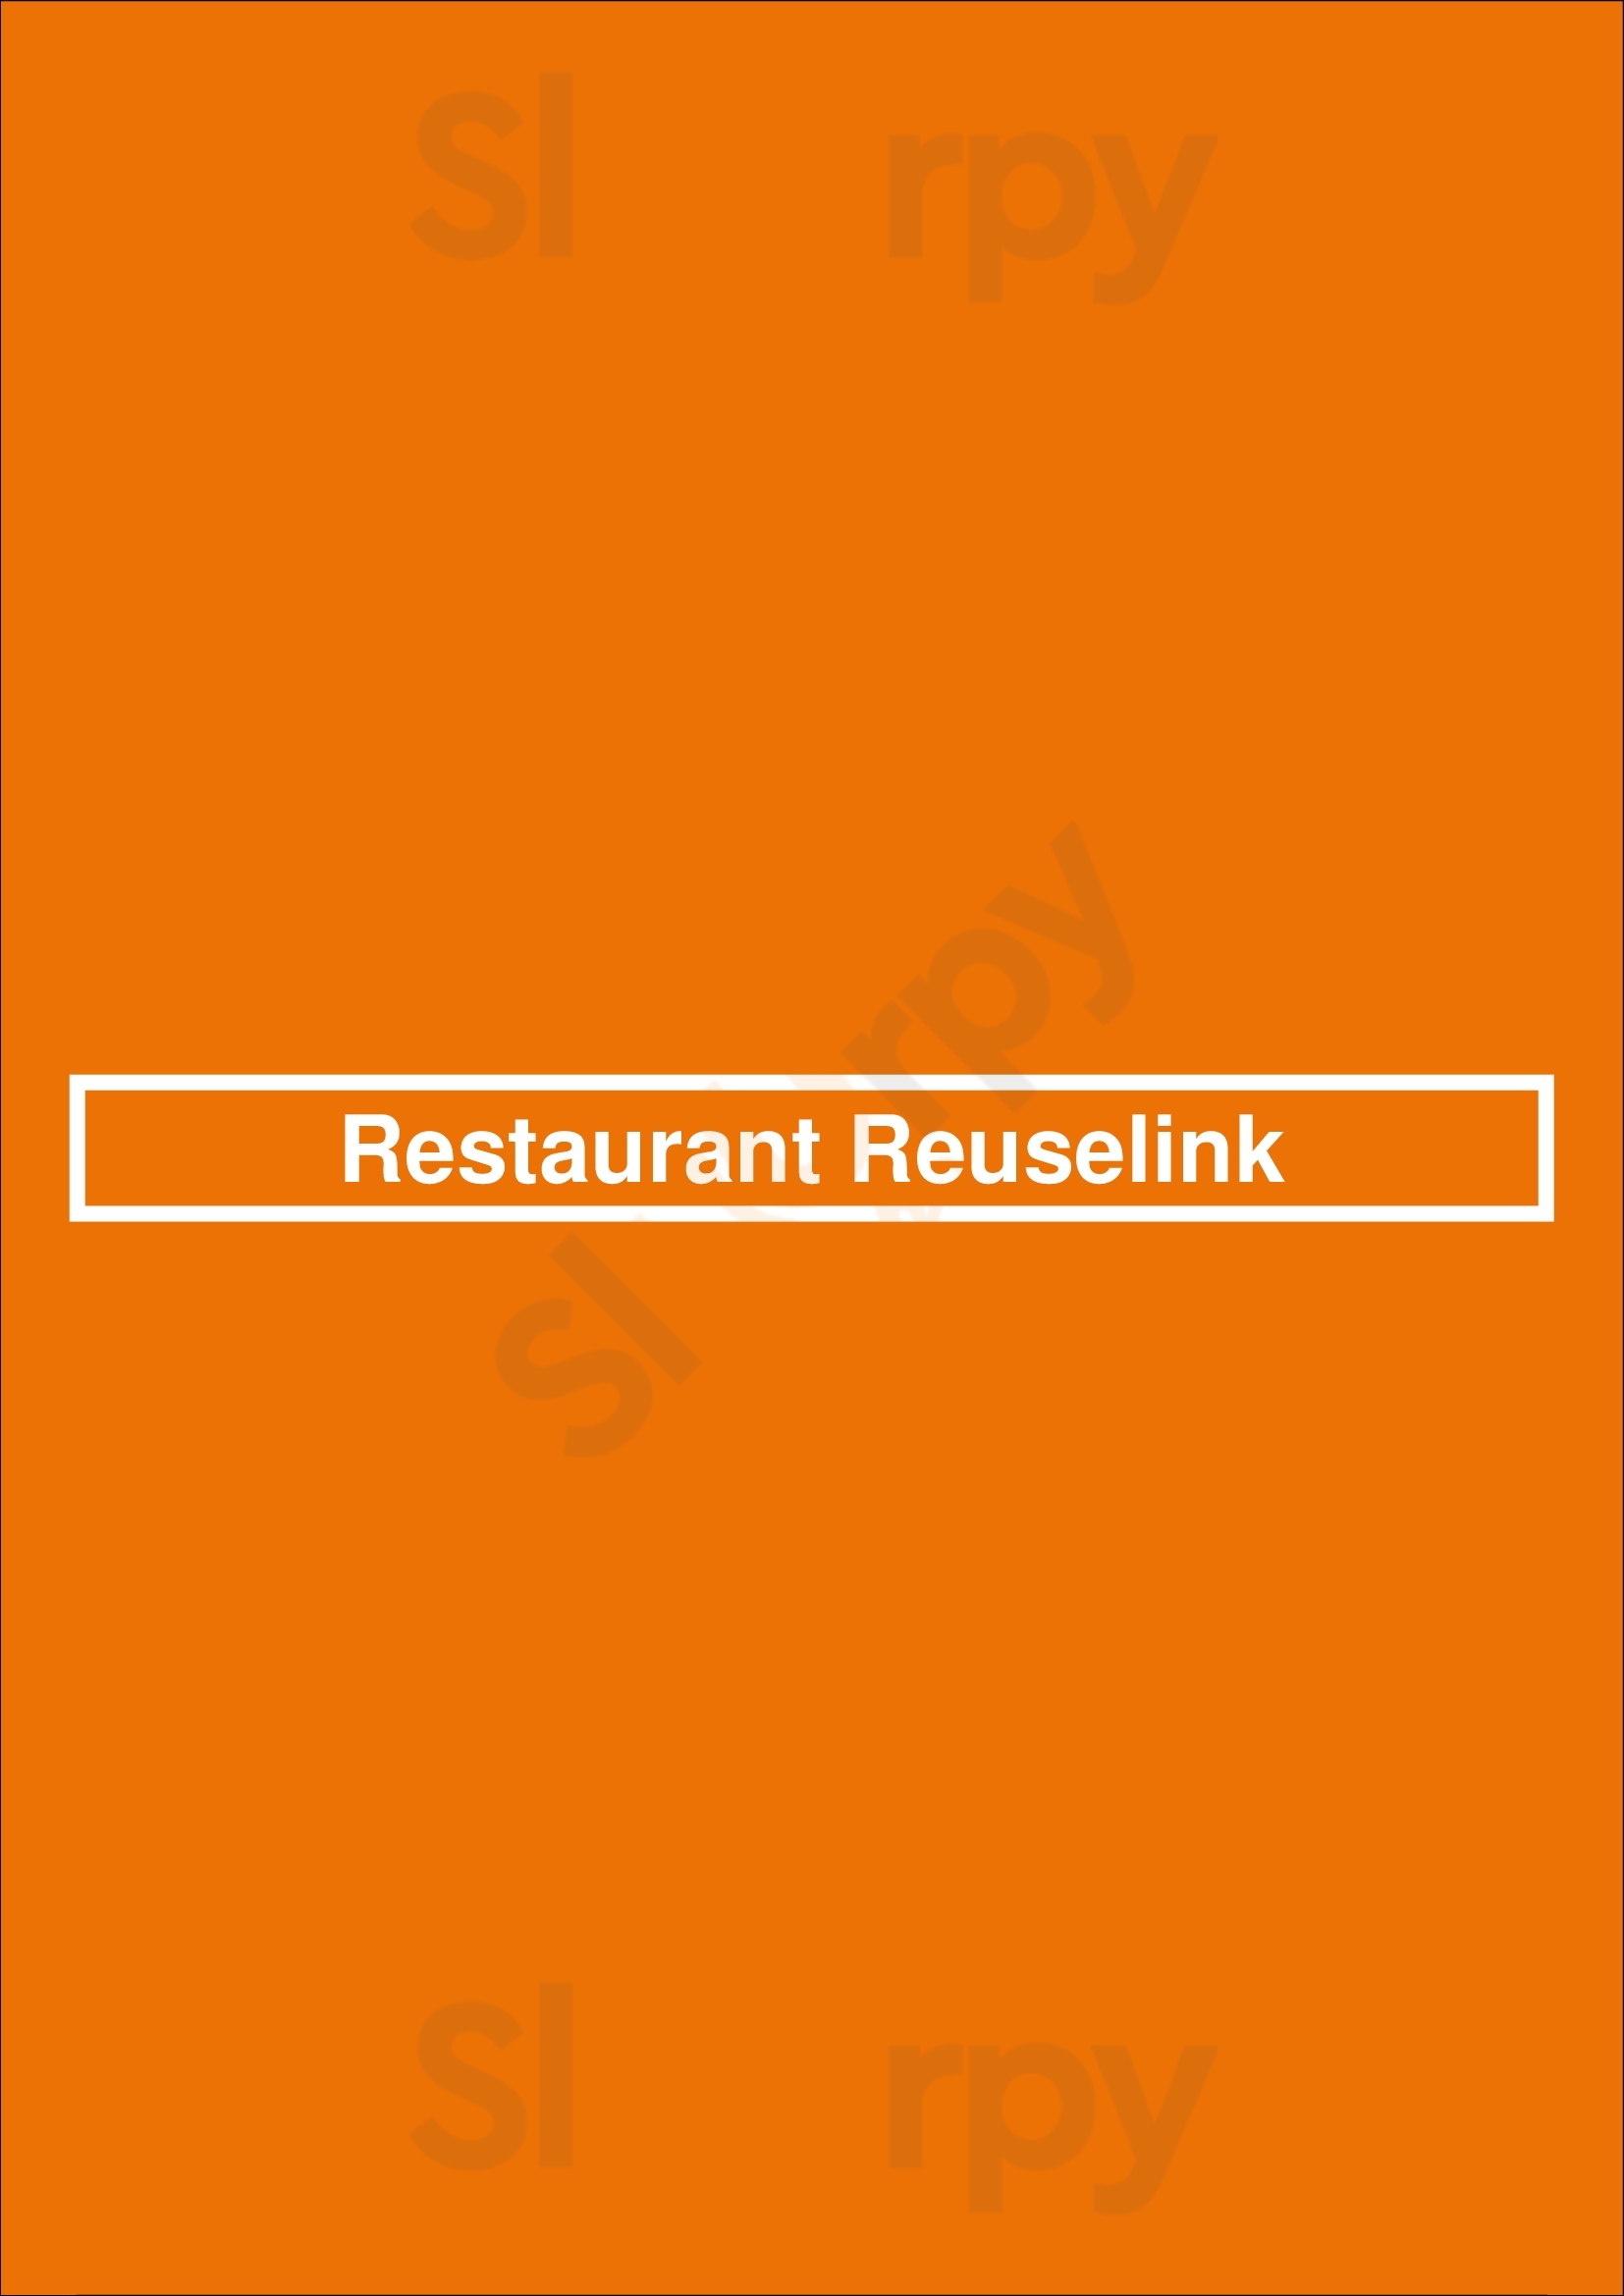 Restaurant Reuselink Winterswijk Menu - 1